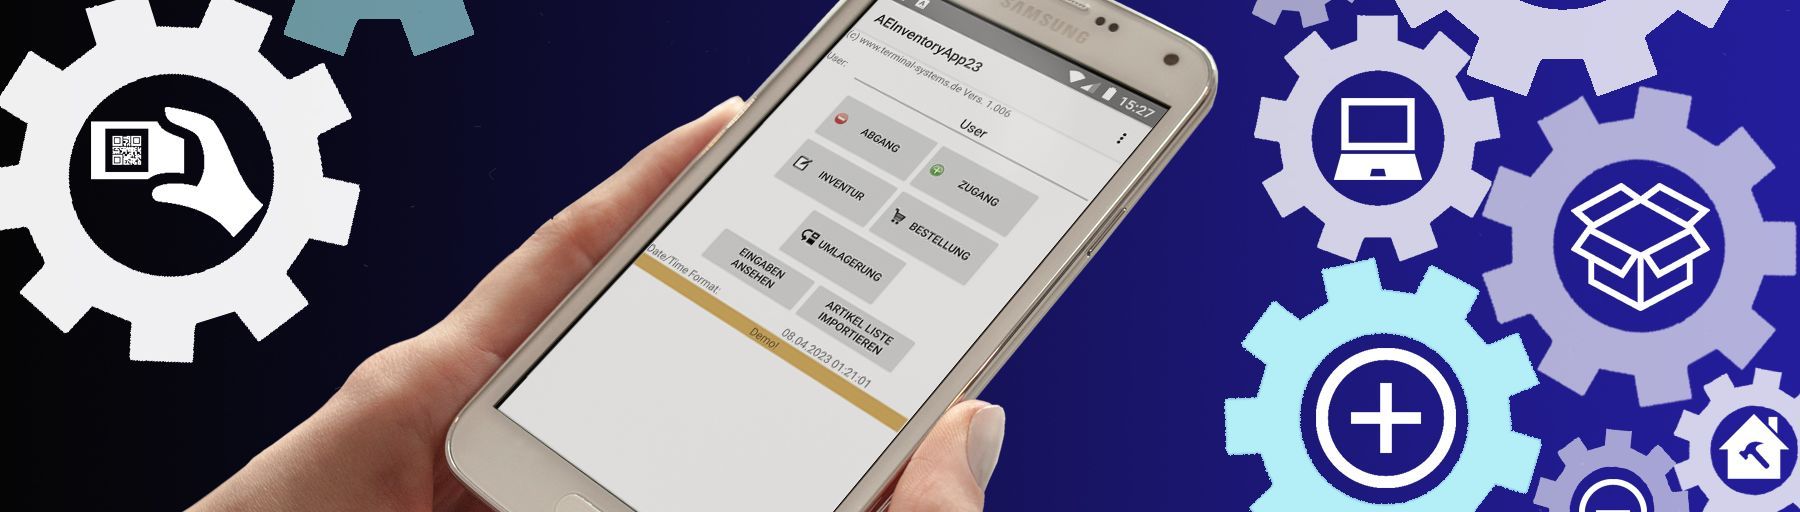 Bild Datenerfassung im Lager mit Android Geräten. Barcode, Strichcode QR Code